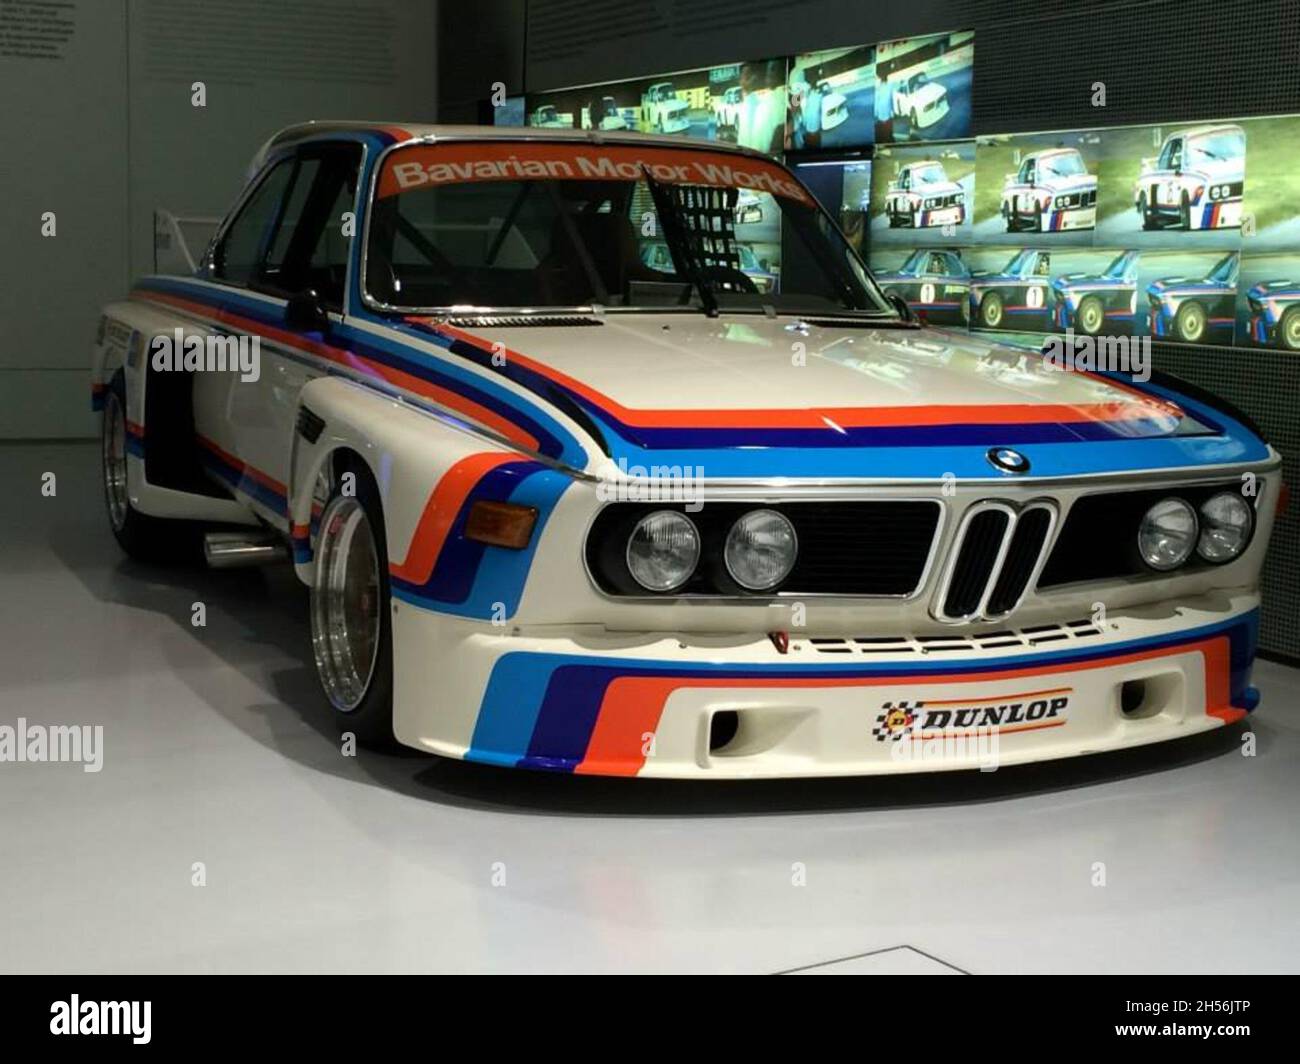 BMW 3.0 CSL (E9): Rennwagen. Zwischen 1973 und 1979 gewann der BMW 3.0 CSL  sechsmal die Europameisterschaft - BMW Museum - München - Deutschland  Stockfotografie - Alamy